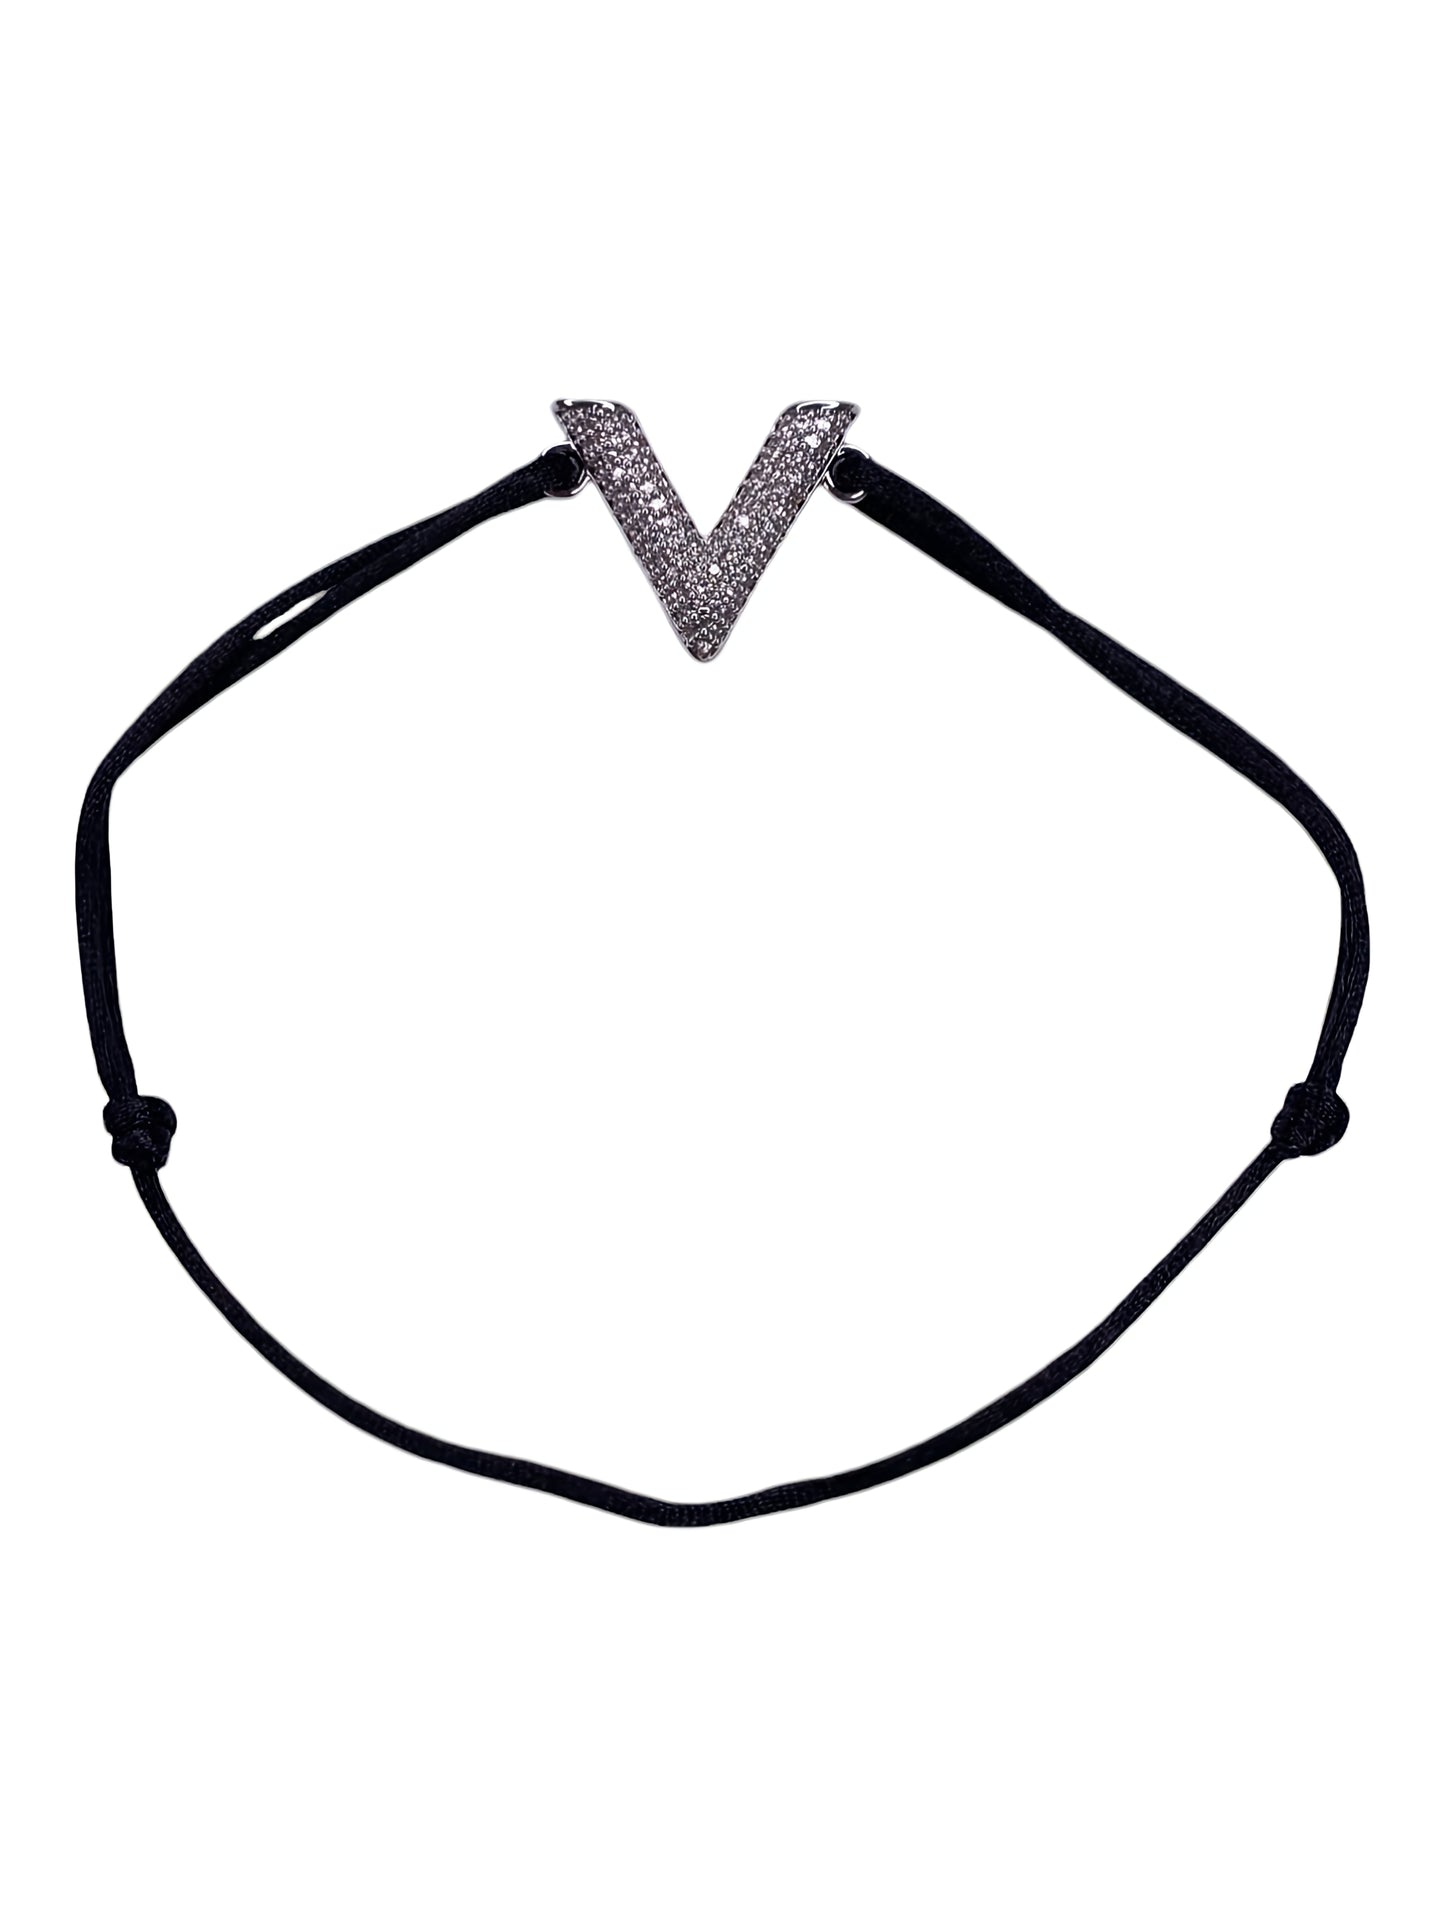 Vintage V Letter Bracelet with Black thread & CZ